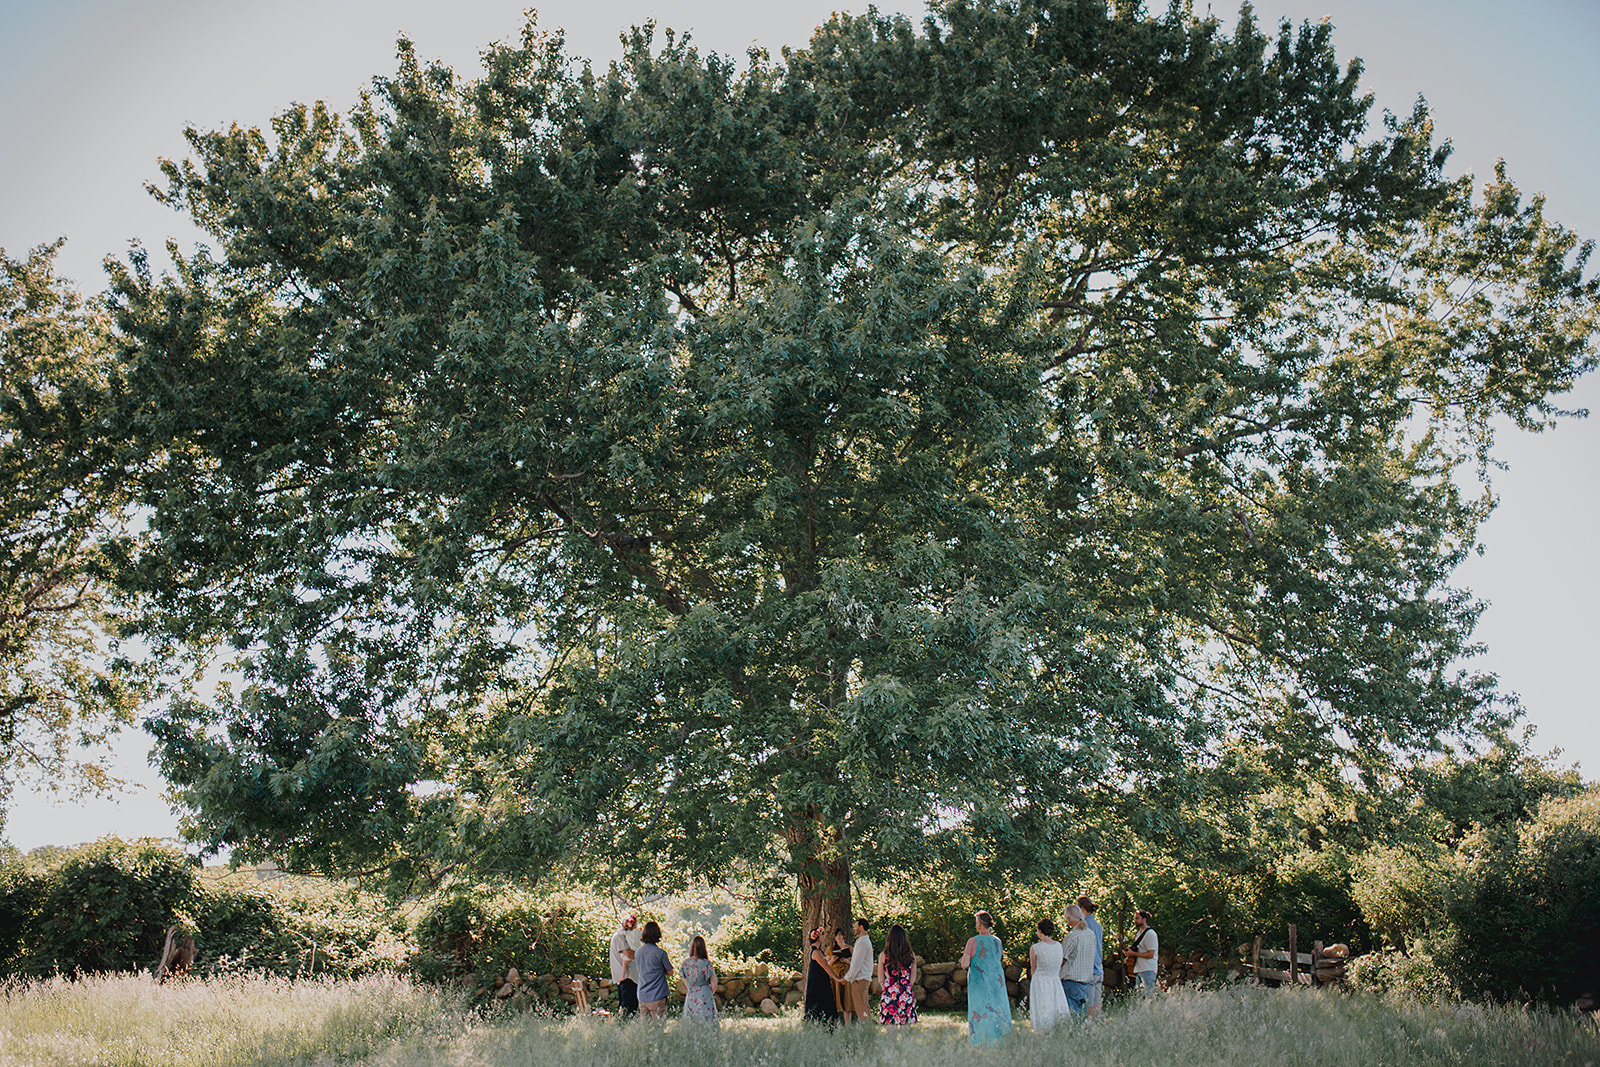 Rhode Island couple elopes under huge old oak tree in open field in backyard.